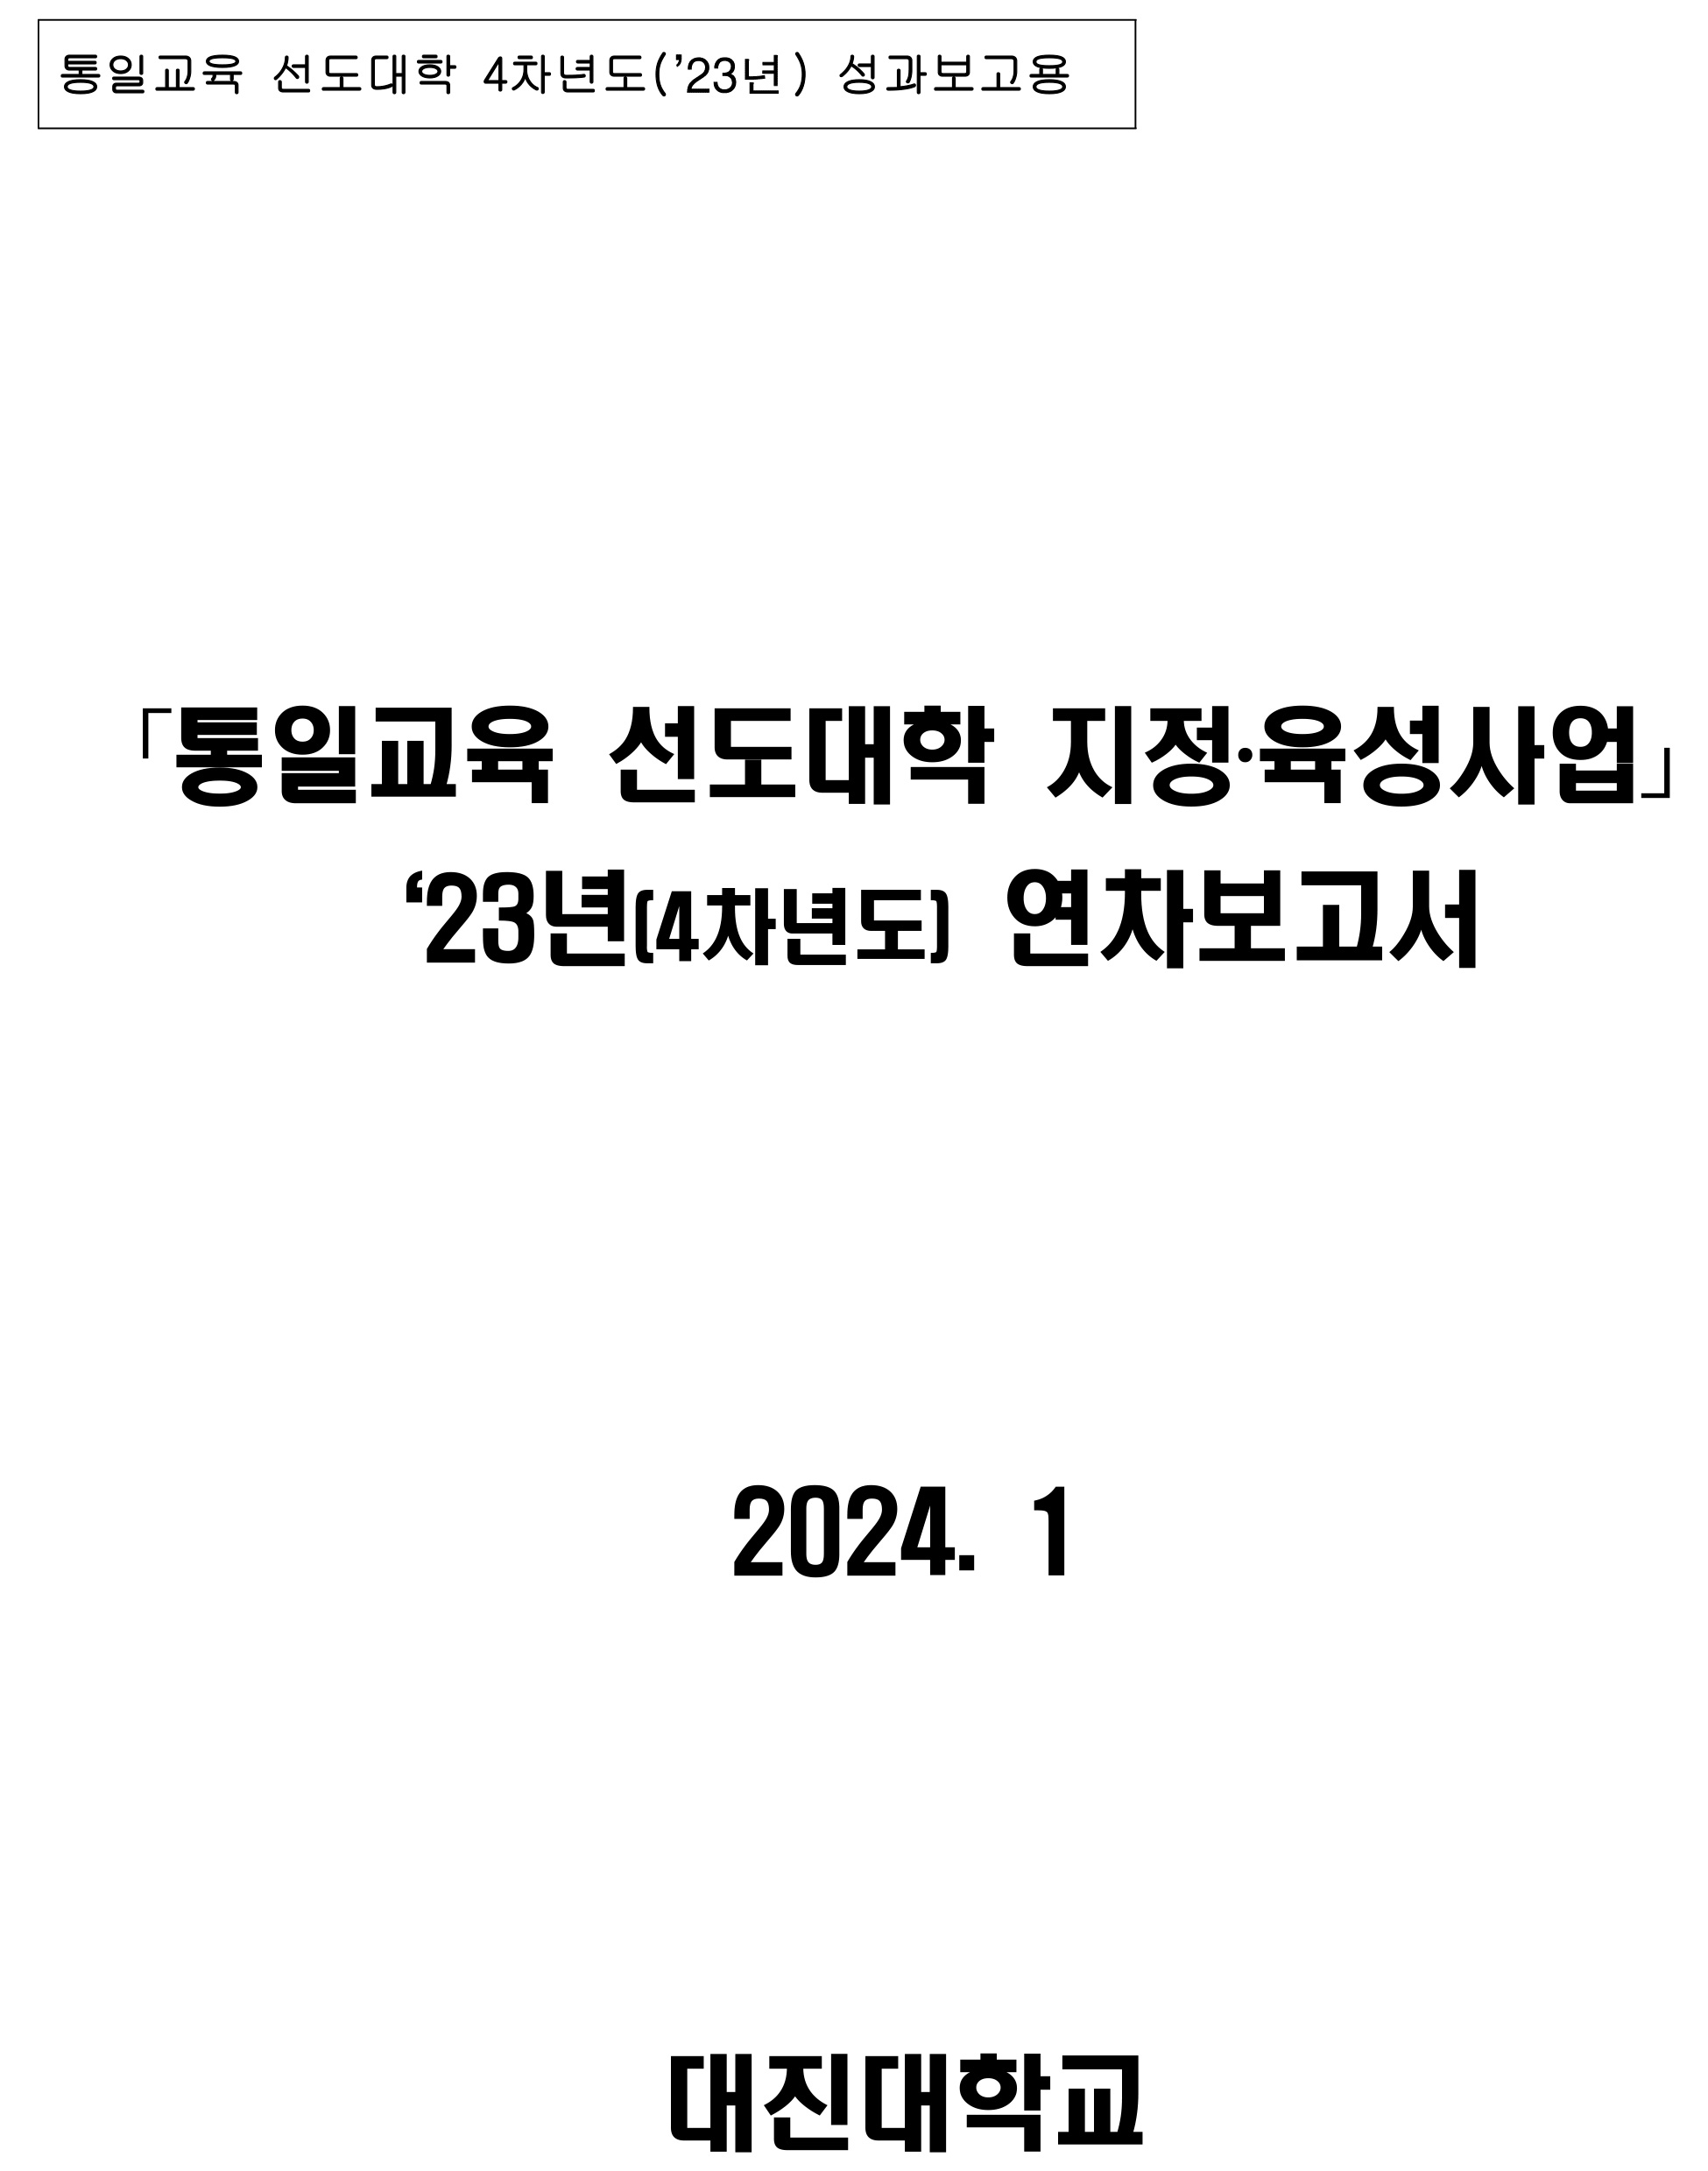 통일교육 선도대학 2023년 성과보고서(대진대학교)